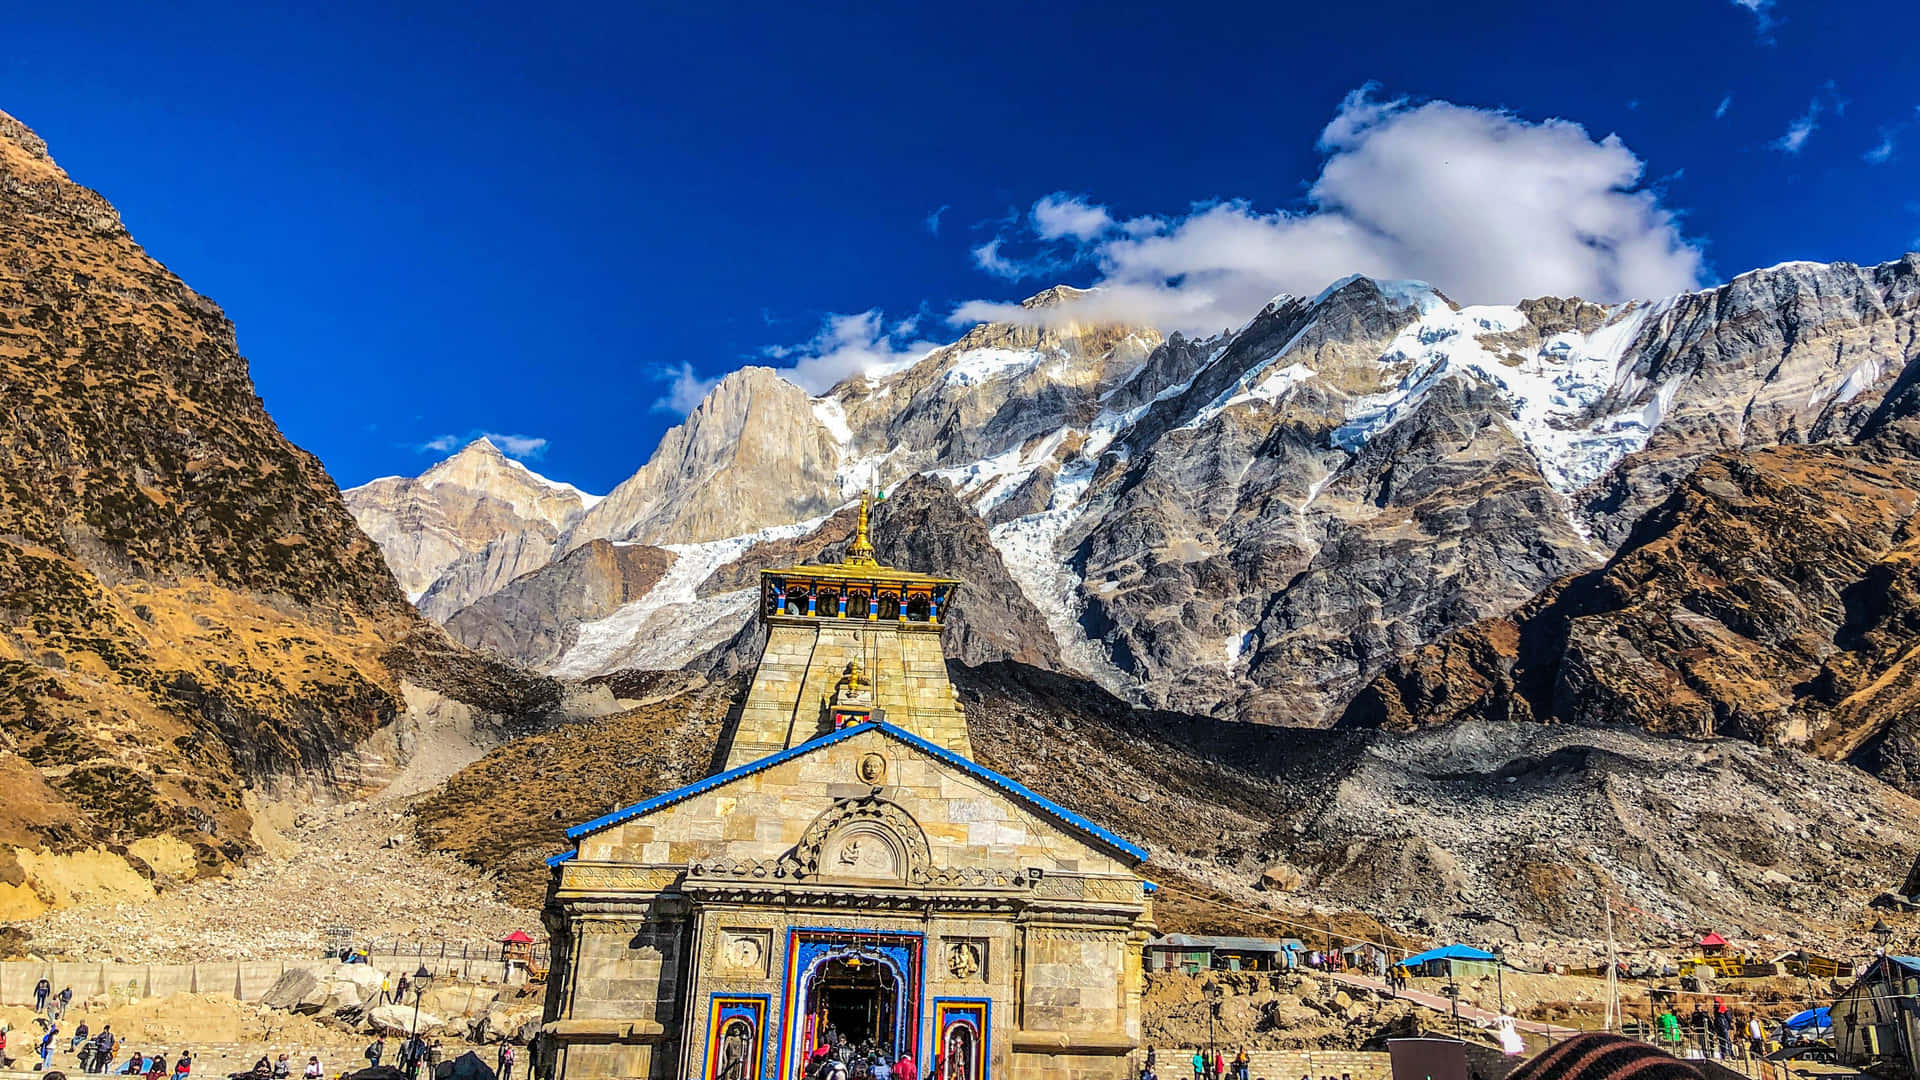 Visitail Famoso Kedarnath Per Ammirare Il Meraviglioso Panorama Dell'himalaya.